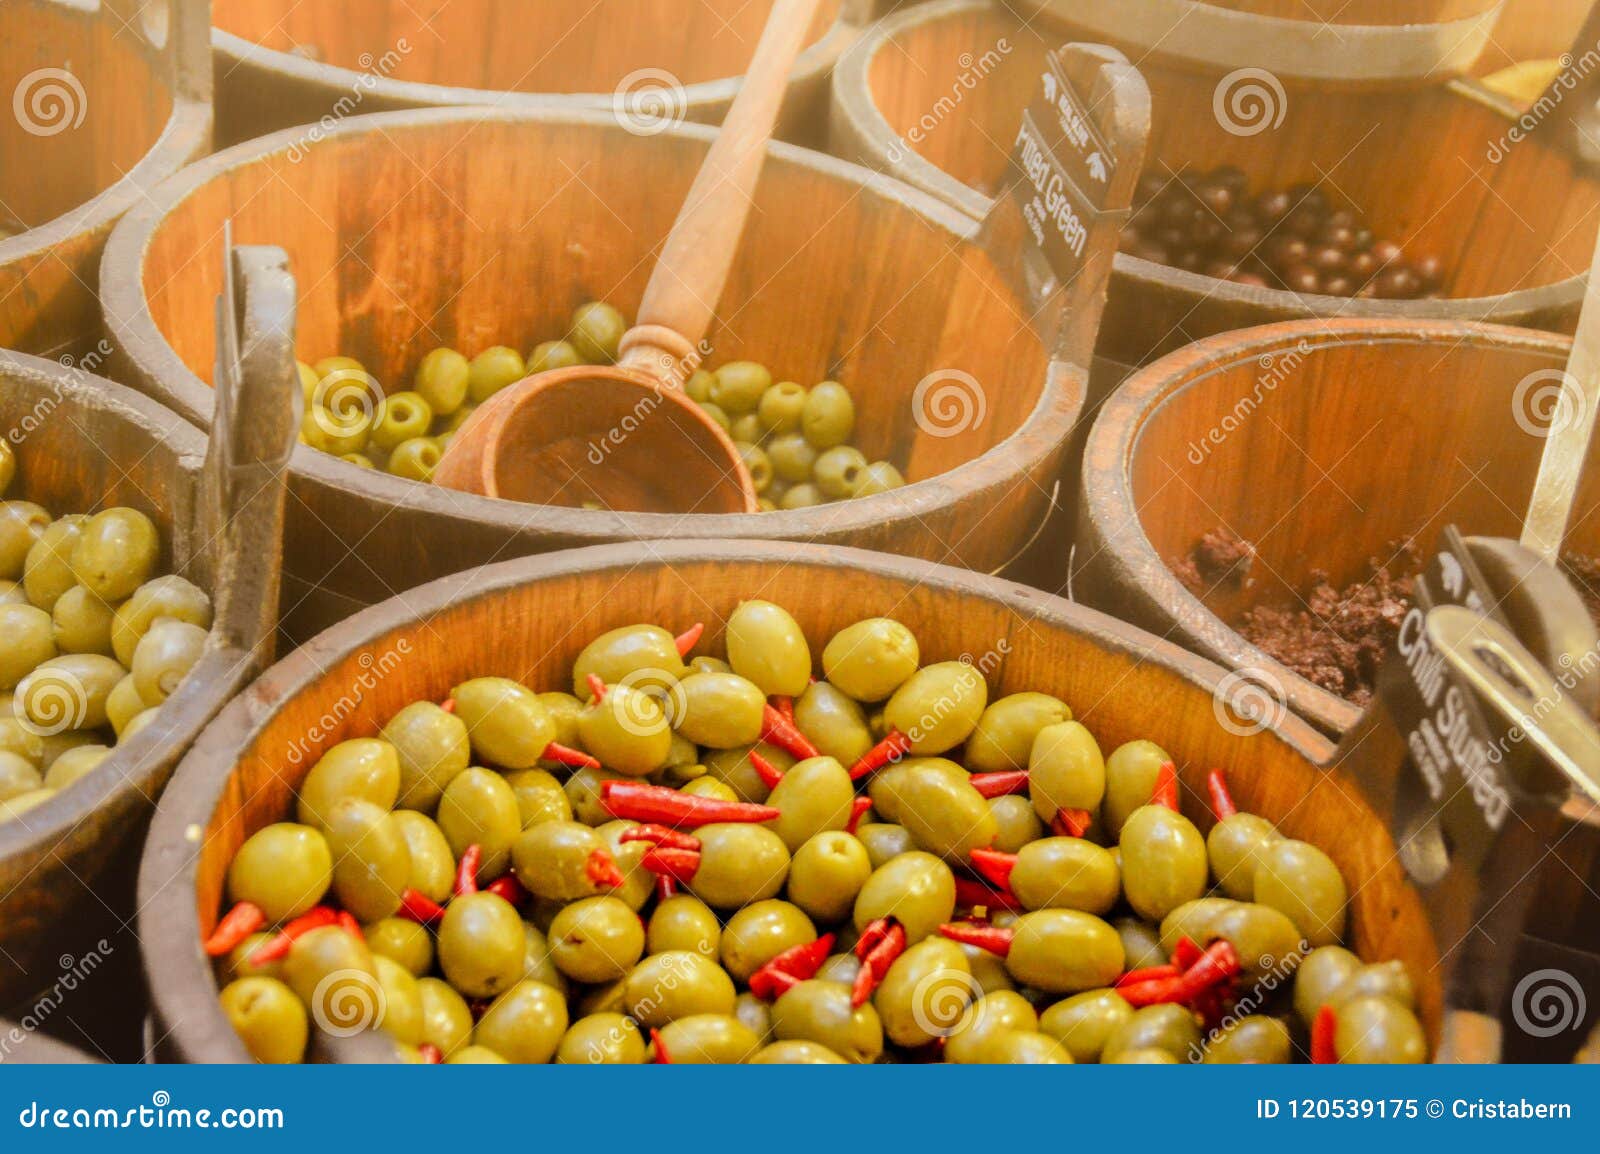 Varianten van olijven. Diverse ingelegde en gevulde olijven worden aangeboden voor verkoop in houten emmers